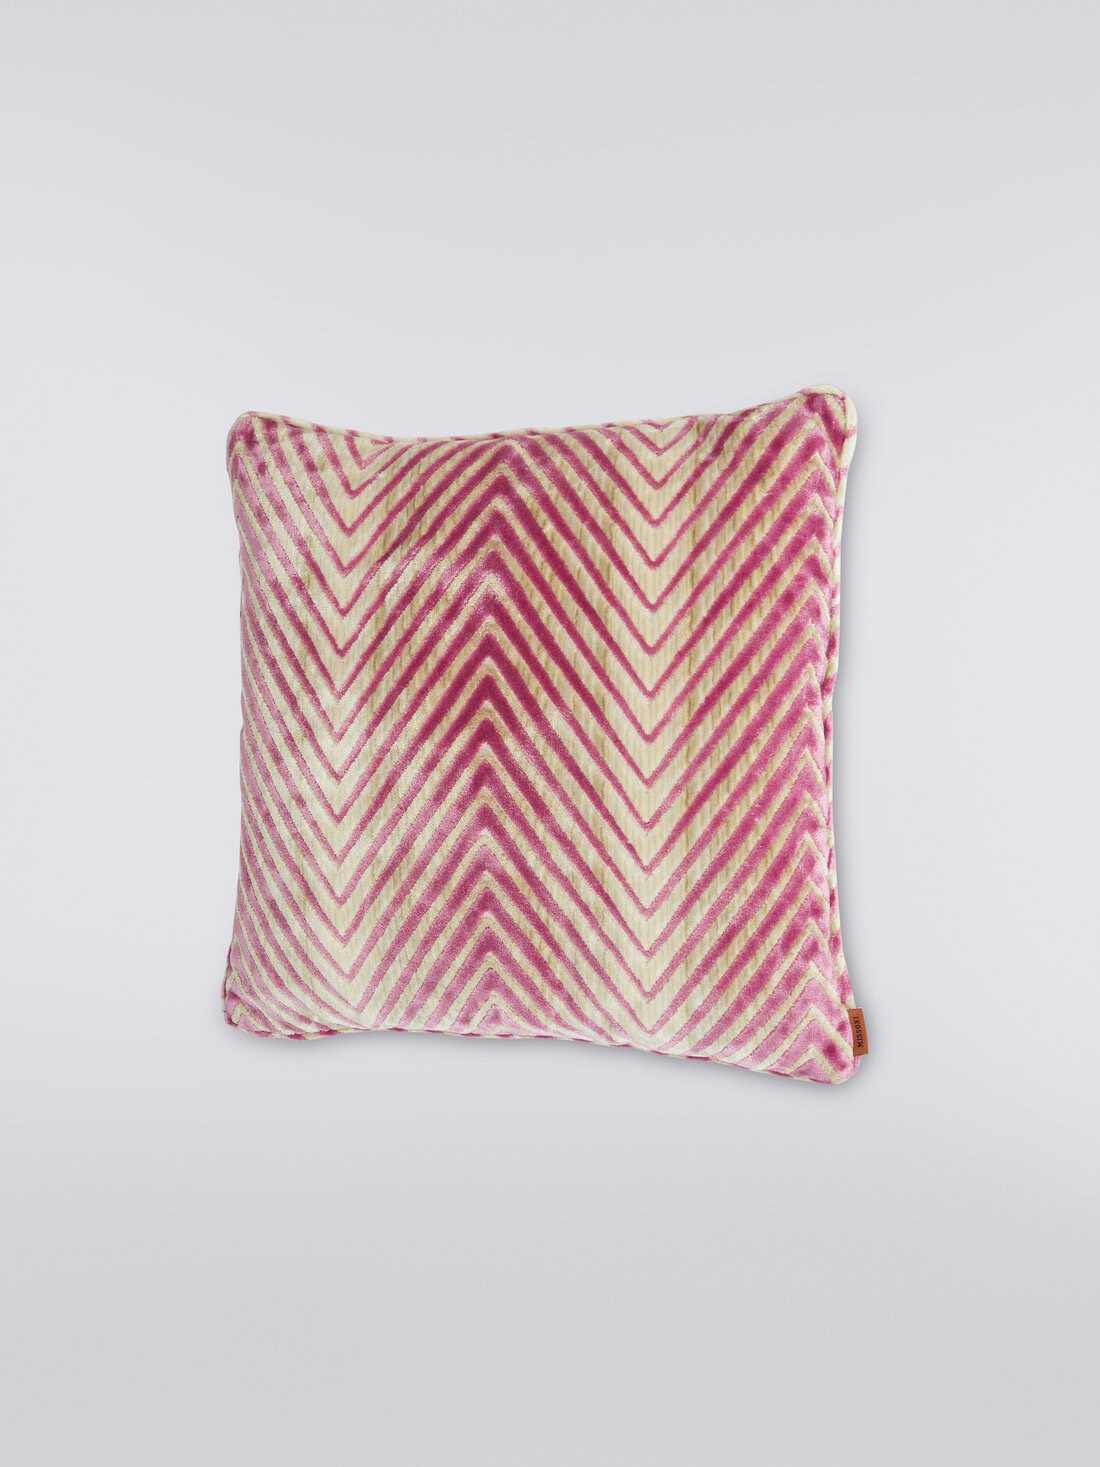 Ziggy 40x40 cm viscose blend zigzag cushion, Multicoloured  - 8051575837074 - 1